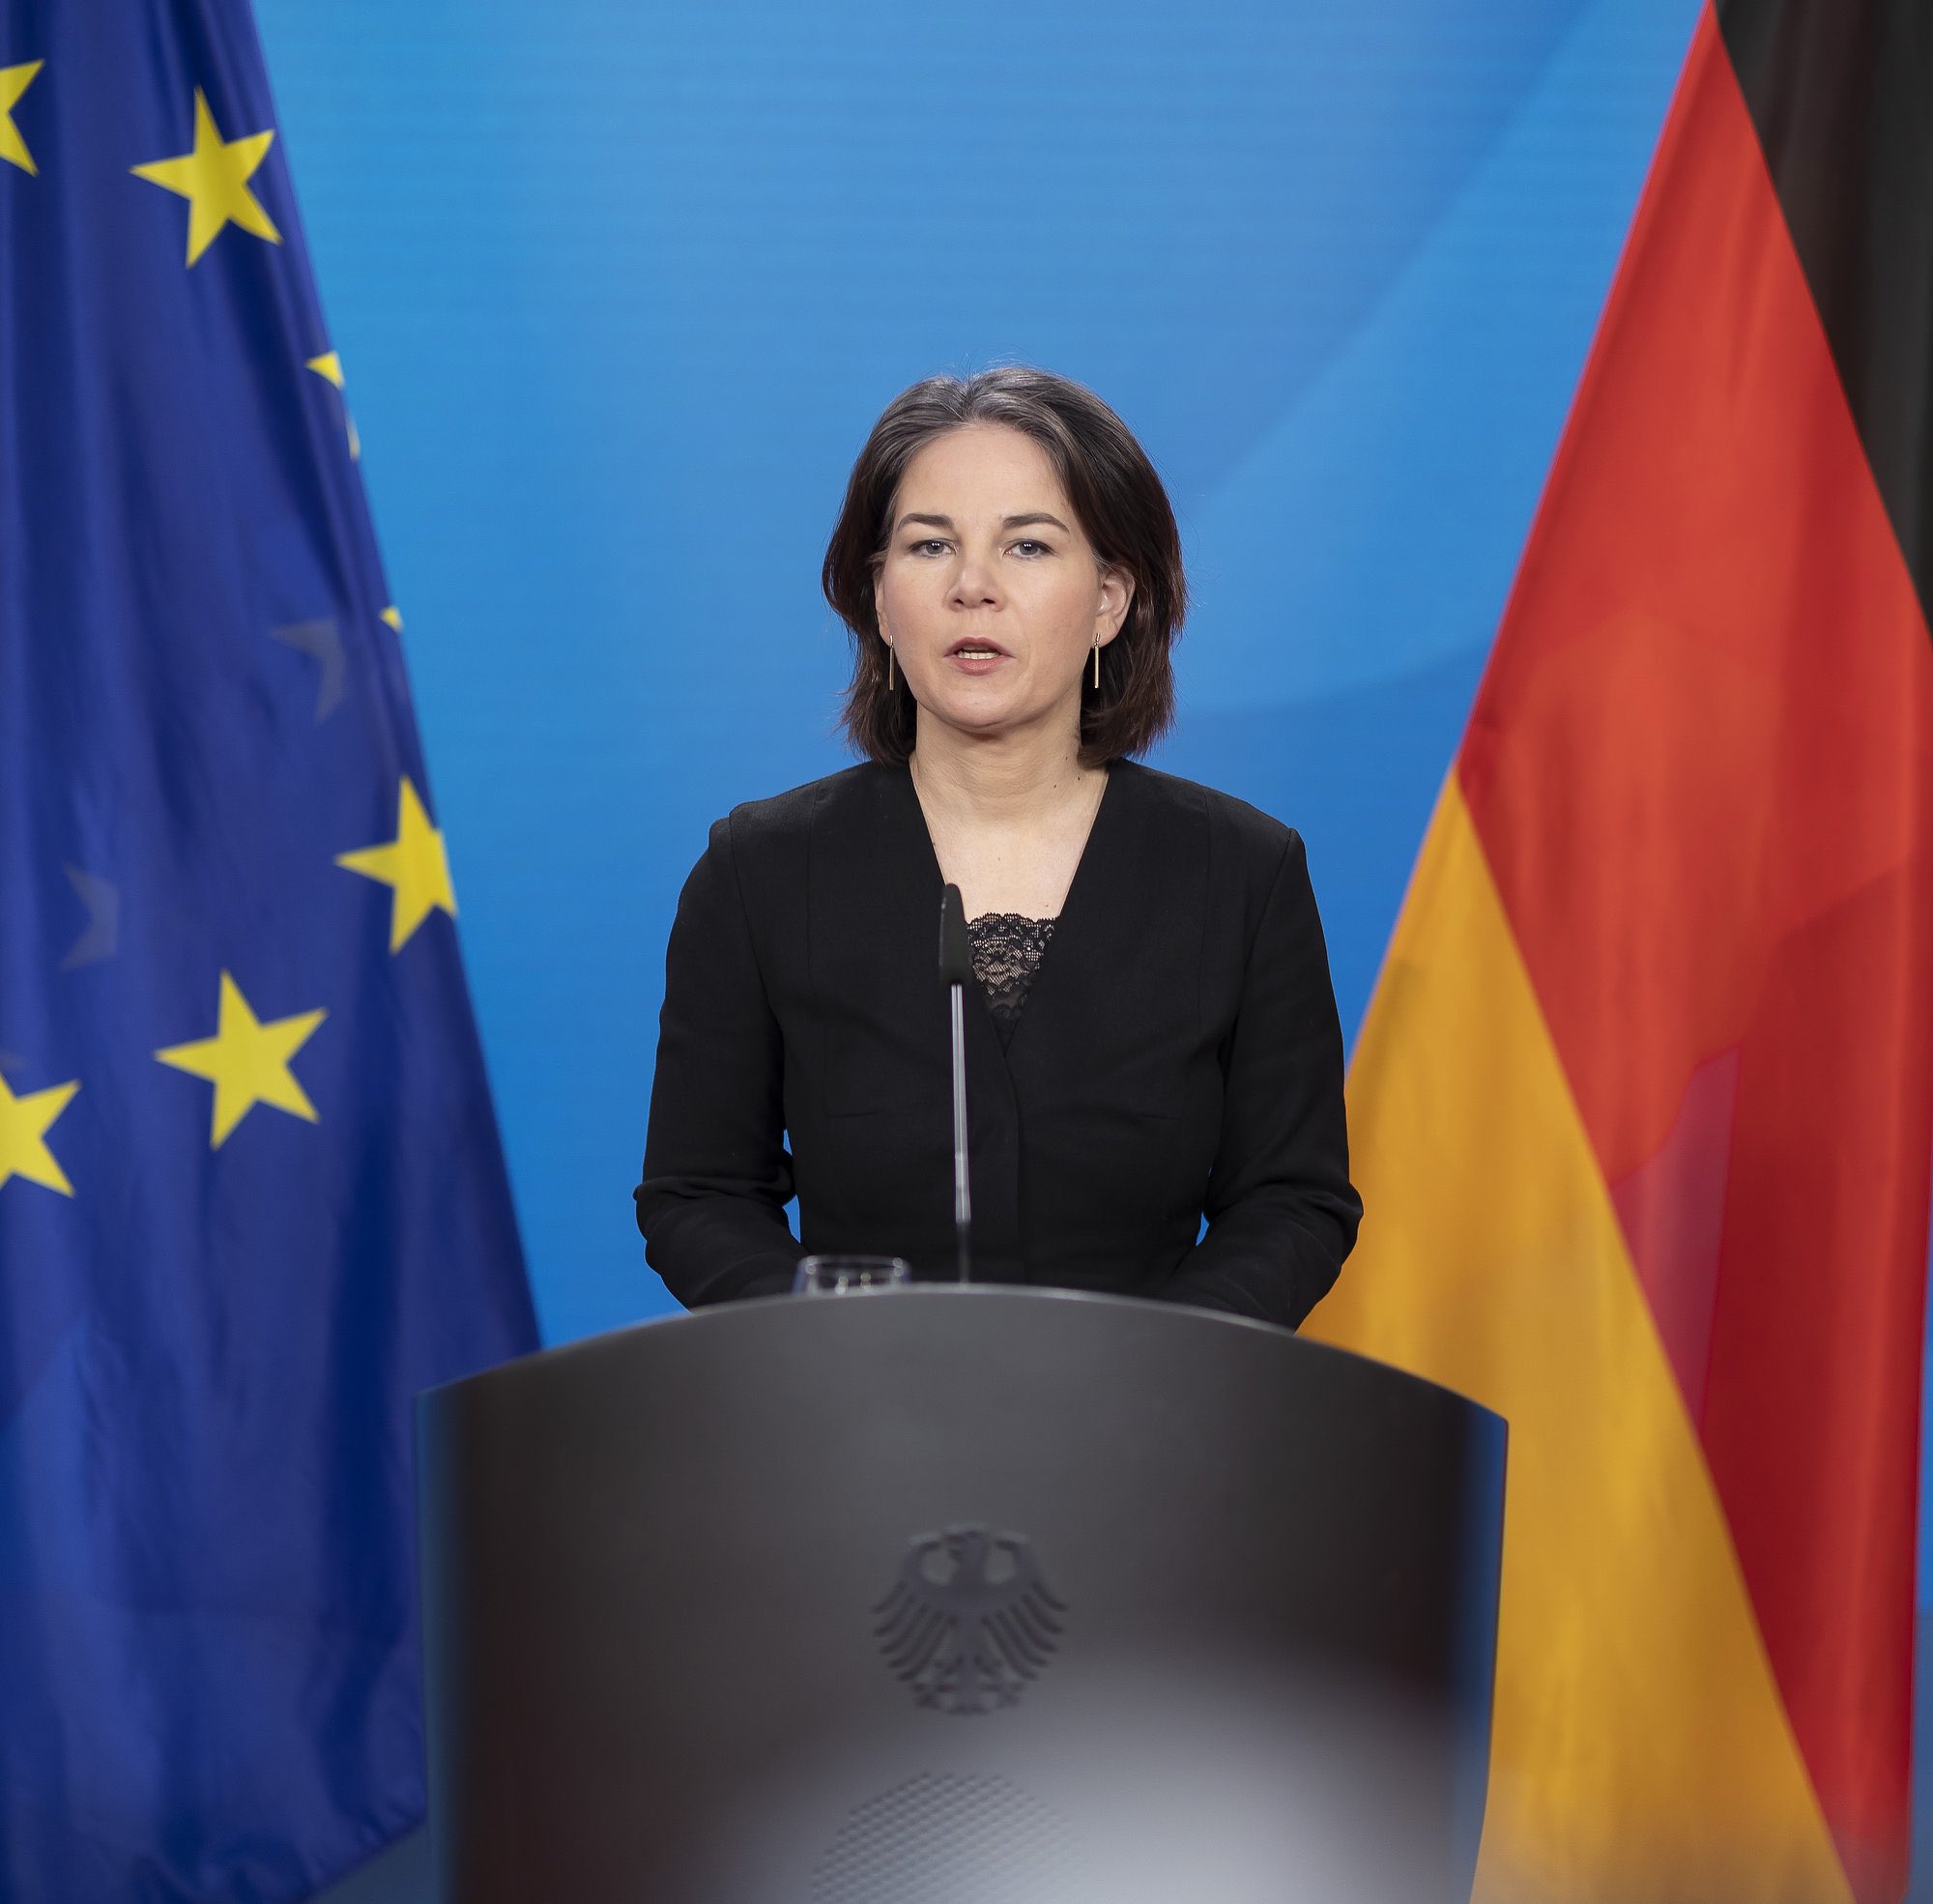 وزيرة الخارجية الألمانية أنالينا بيربوك ( وزارة الخارجية الألمانية -توتير)